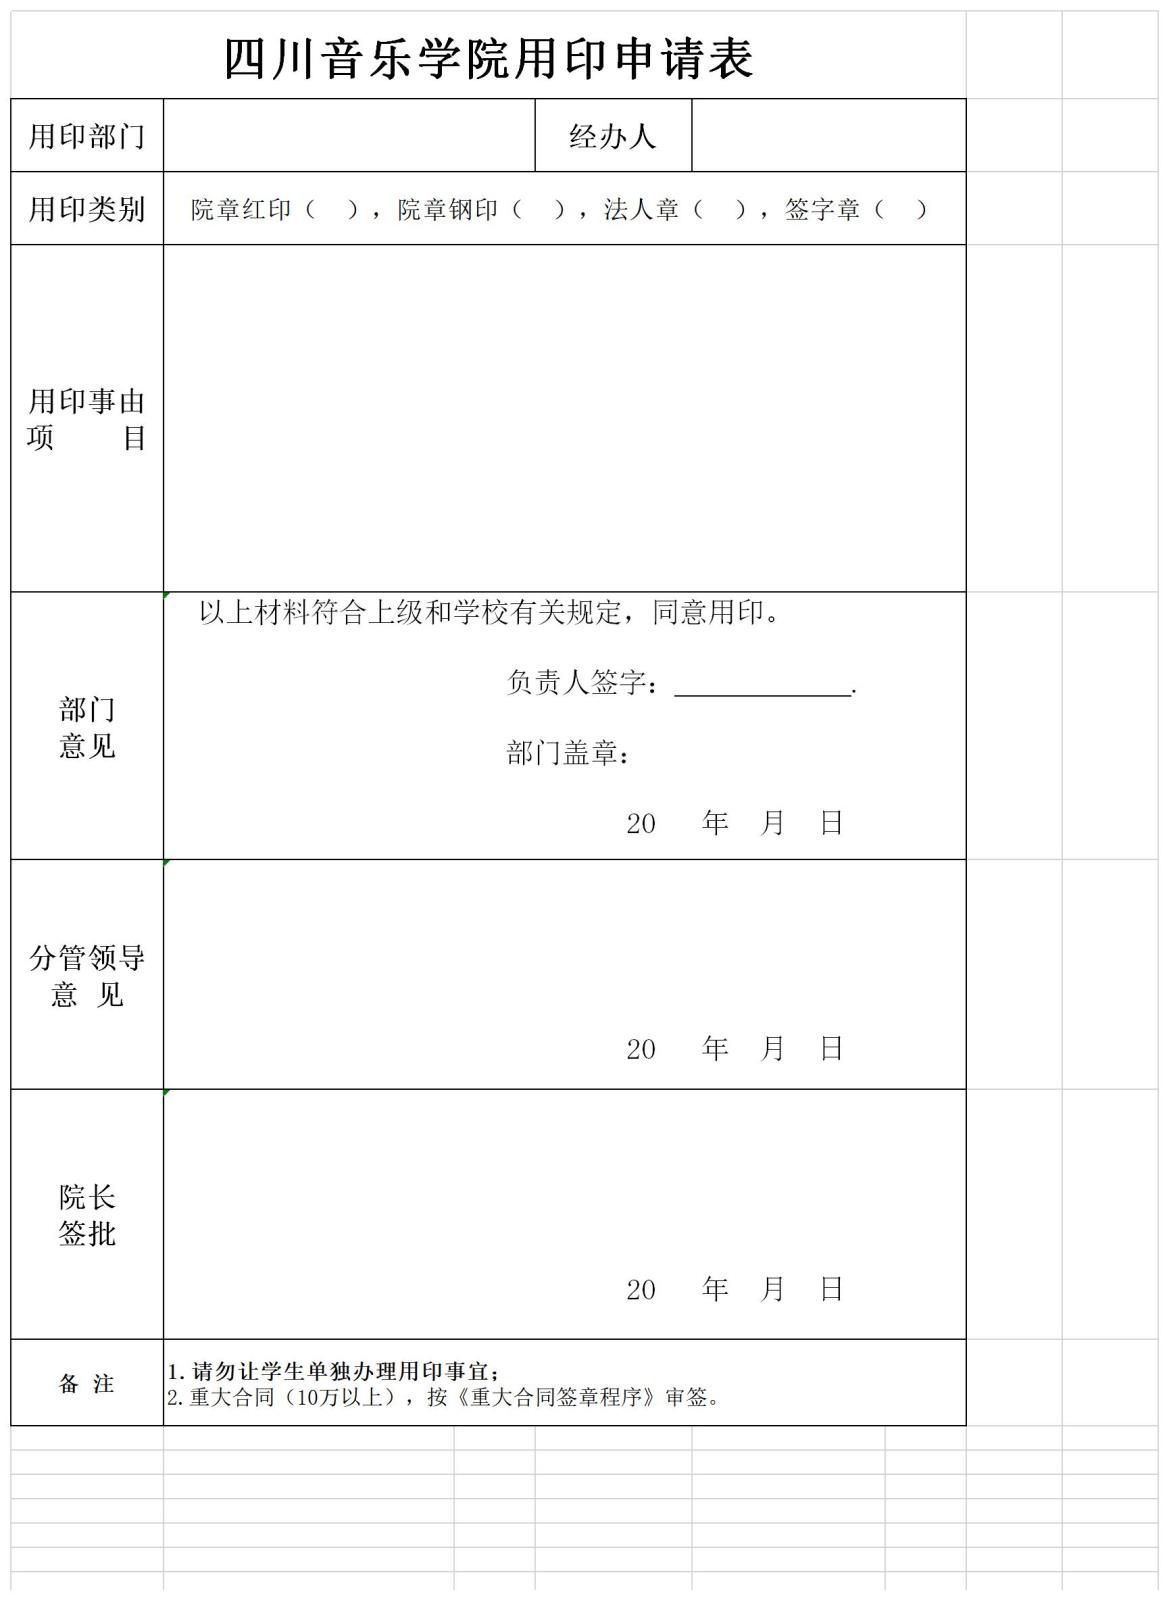 四川音乐学院用印申请表.jpg